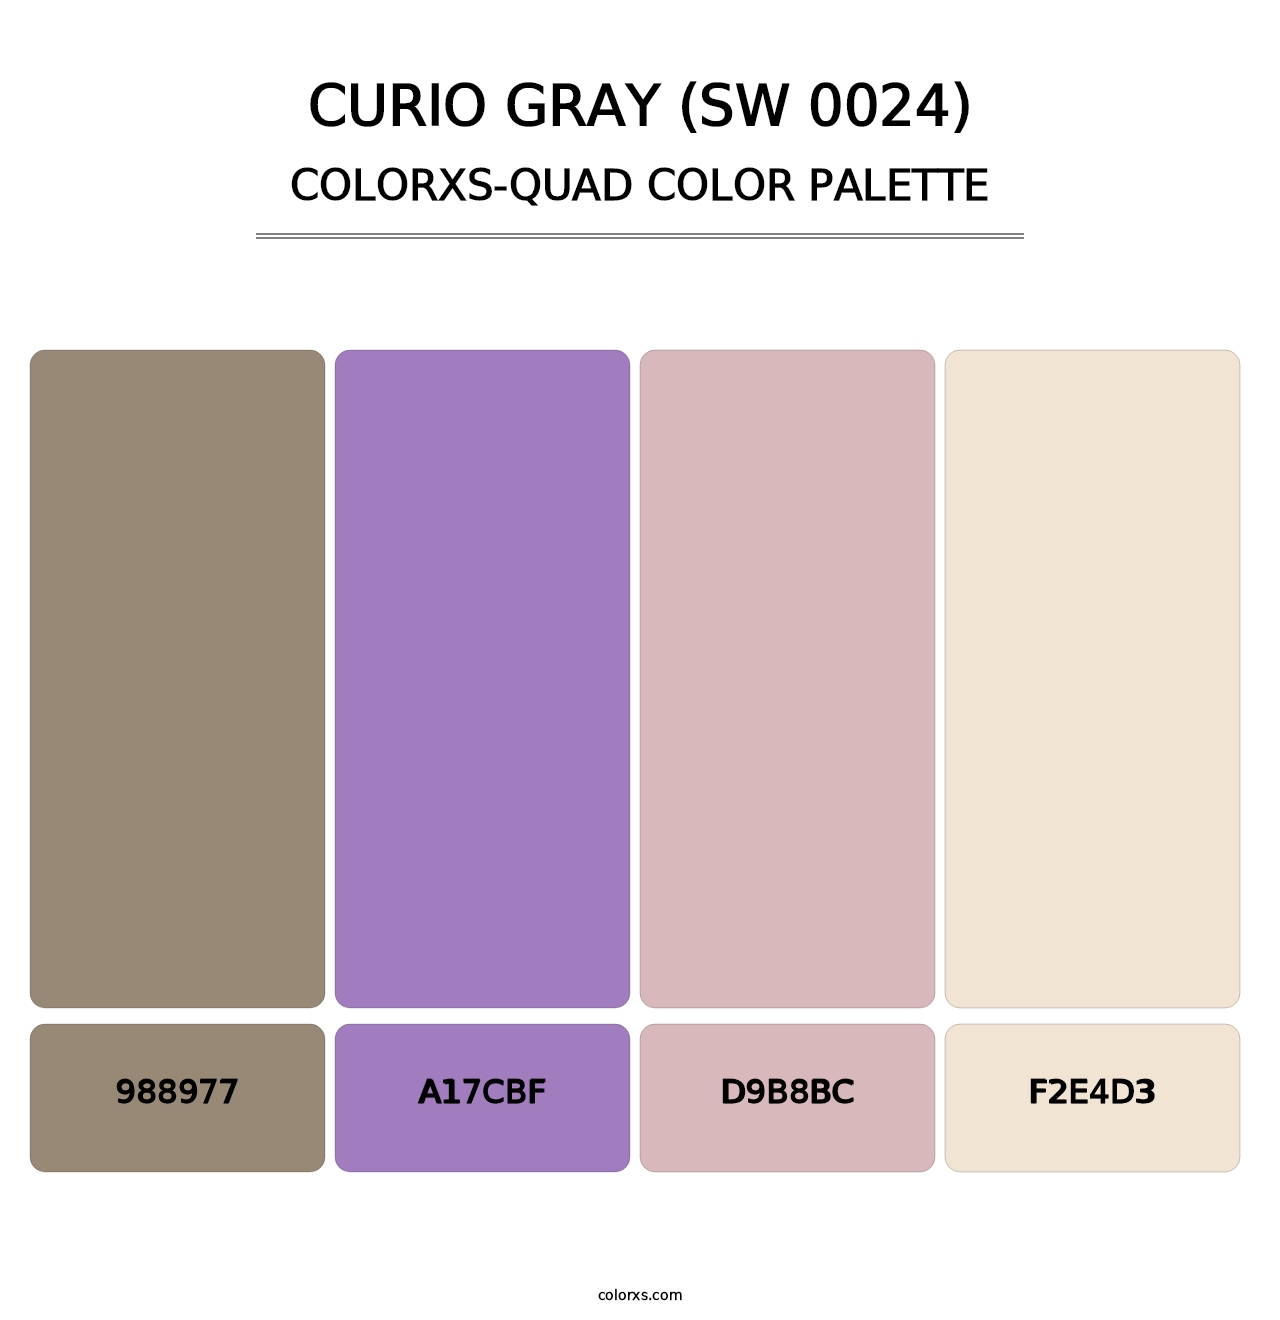 Curio Gray (SW 0024) - Colorxs Quad Palette